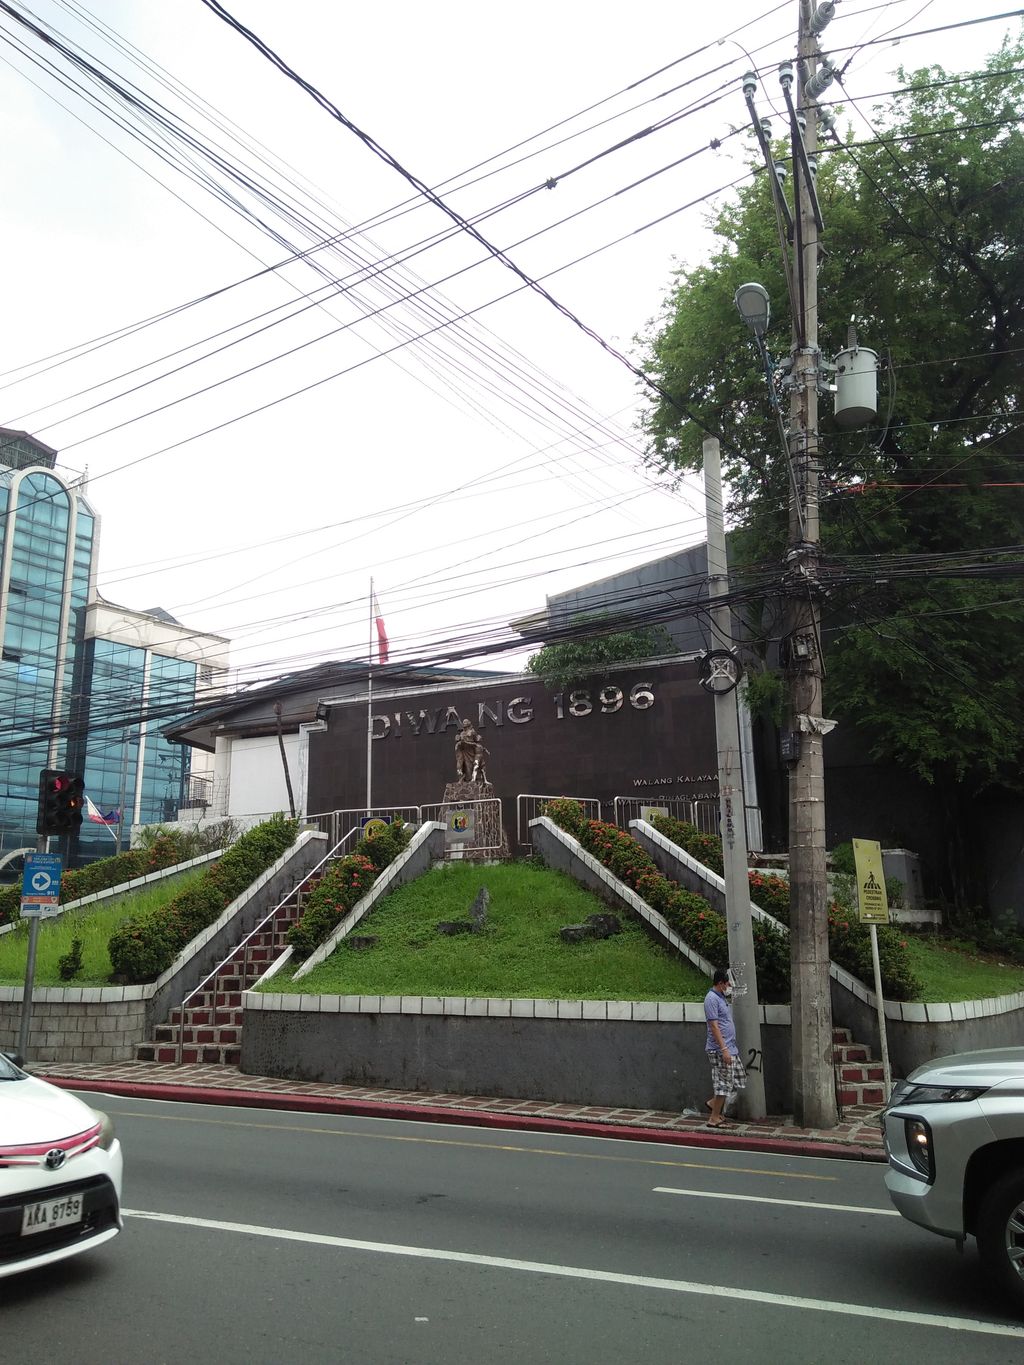 Diwa ng 1896 Monument (formerly the Original Pinaglabanan Shrine)